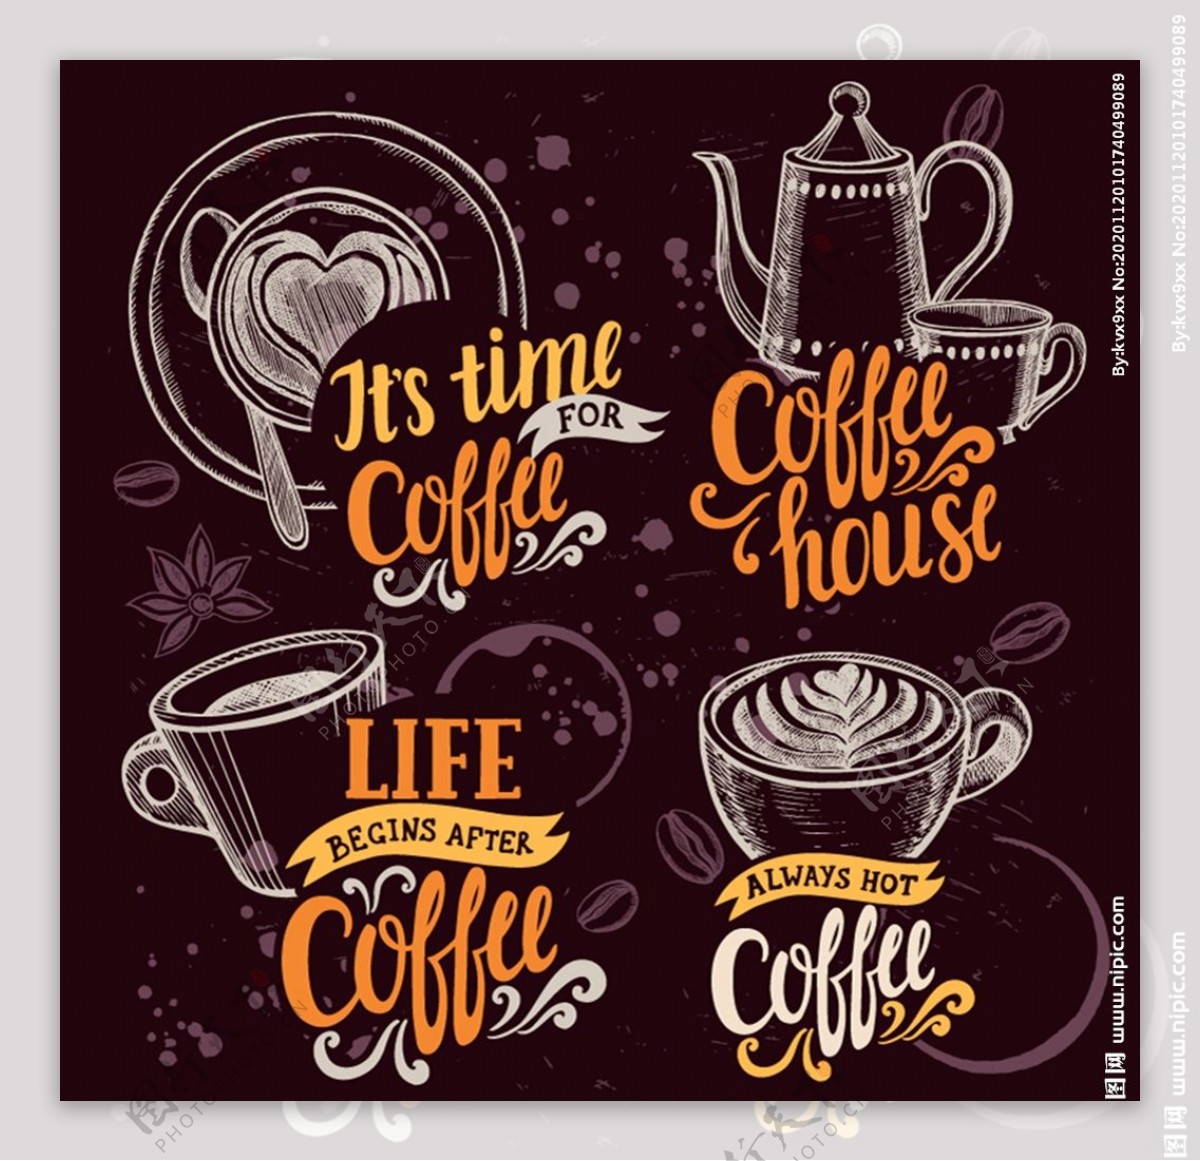 咖啡店咖啡元素图片